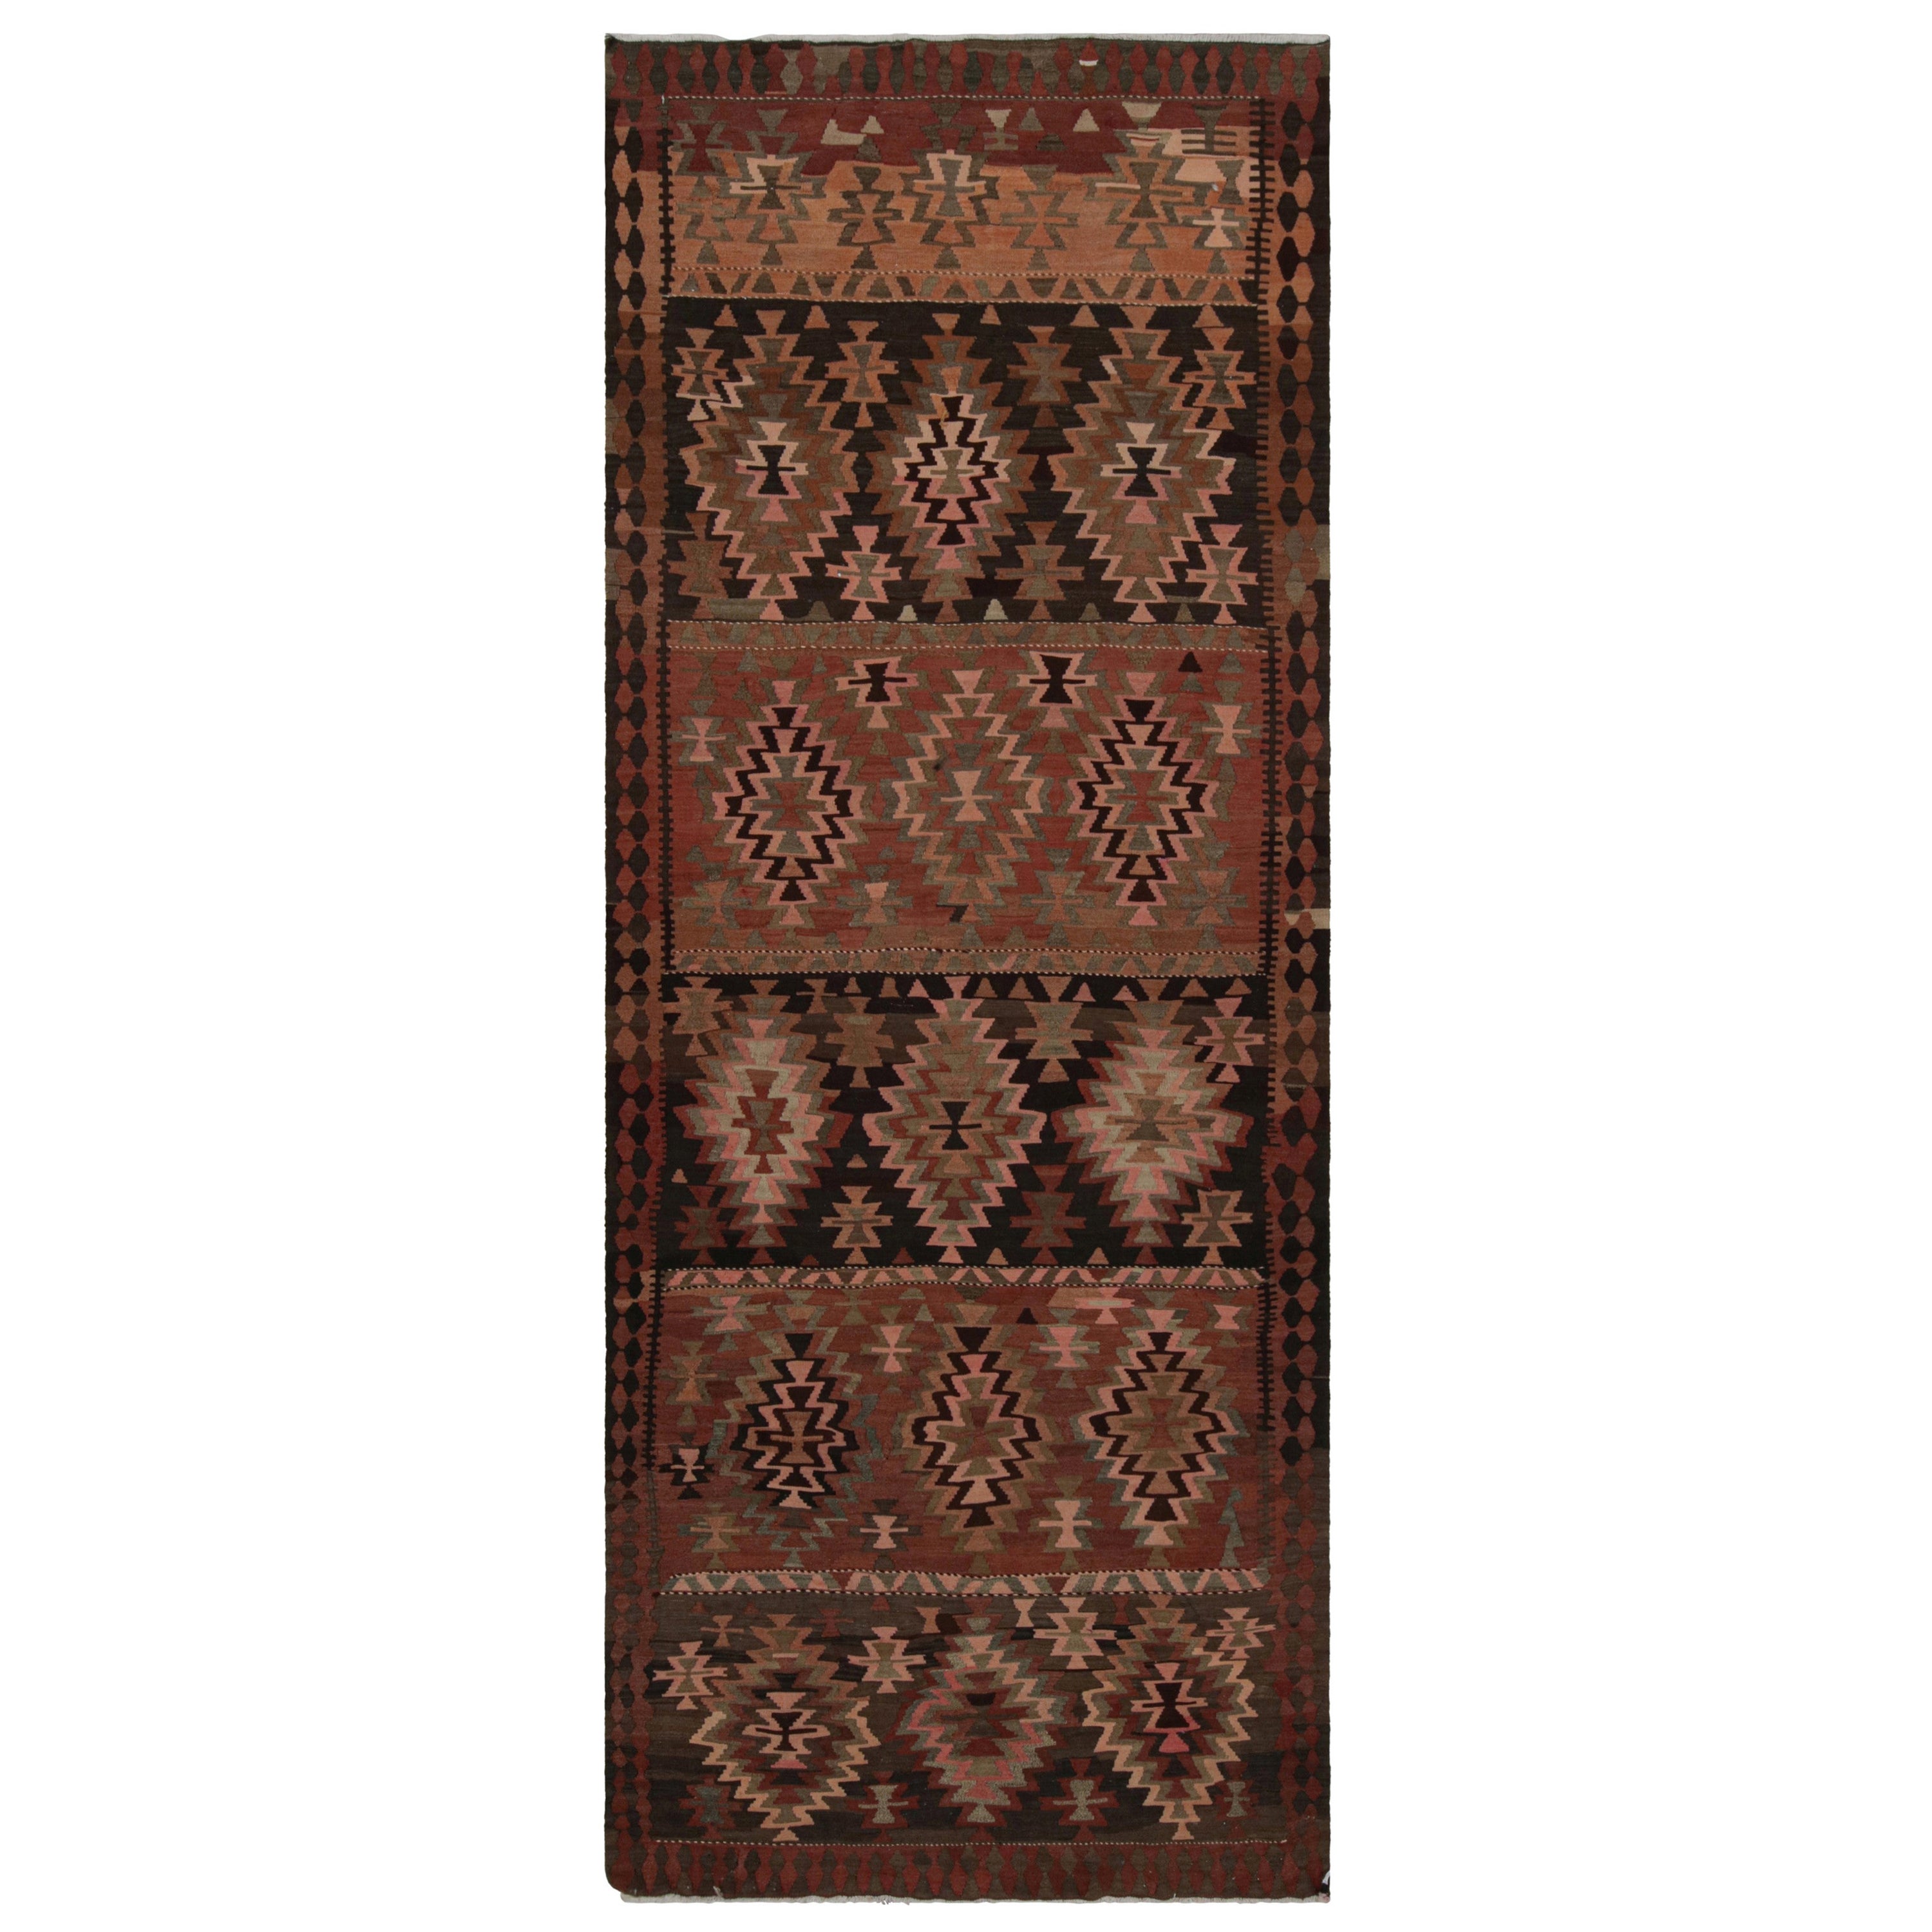 Vintage Afghan Kilim Runner Rug, with Geometric Patterns, from Rug & Kilim